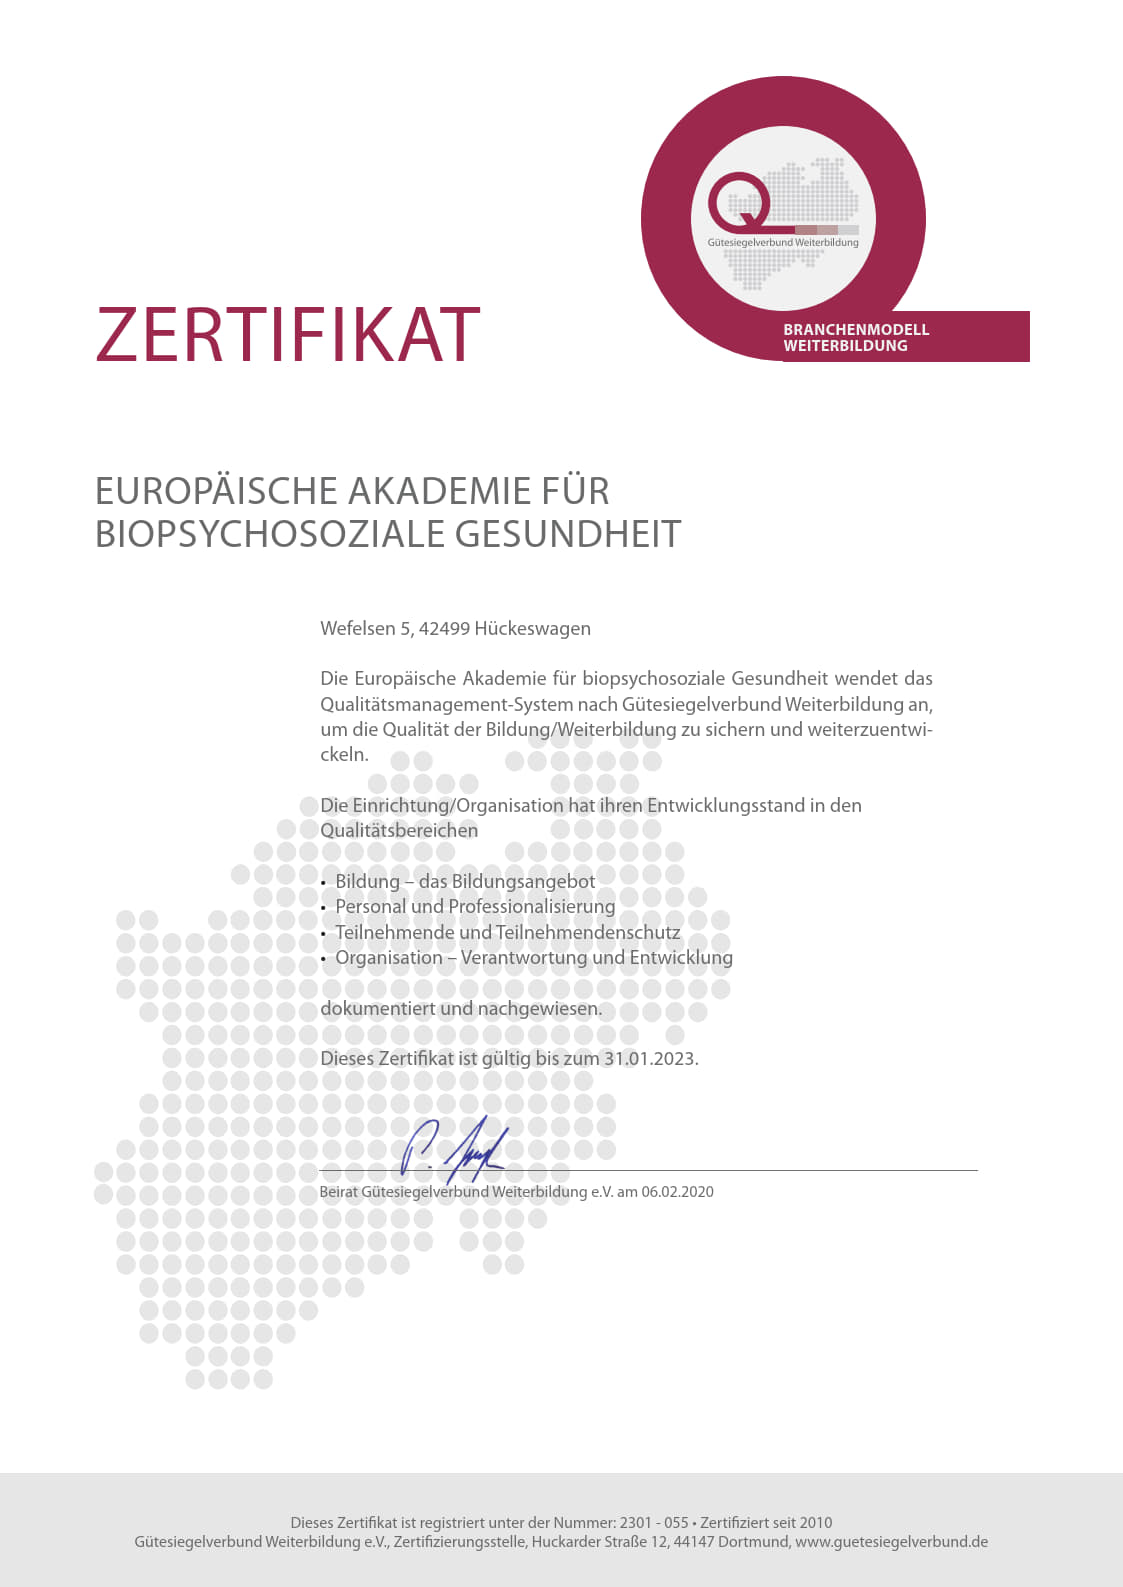 Zertifikat Gütesiegelverbund Weiterbildung e.V.